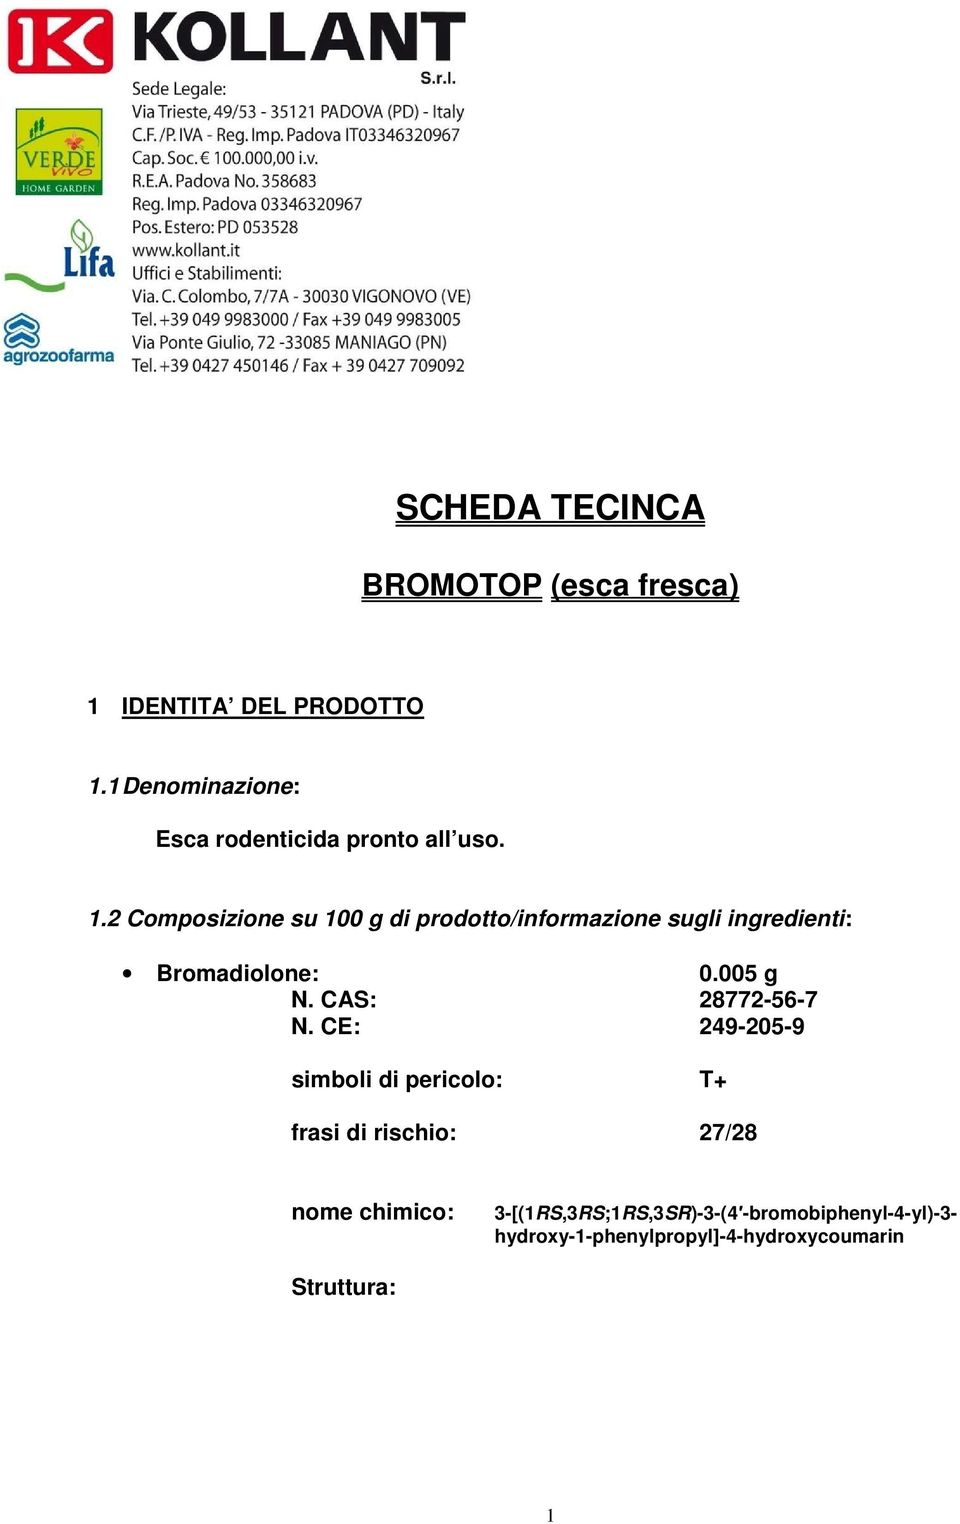 2 Composizione su 100 g di prodotto/informazione sugli ingredienti: Bromadiolone: 0.005 g N.